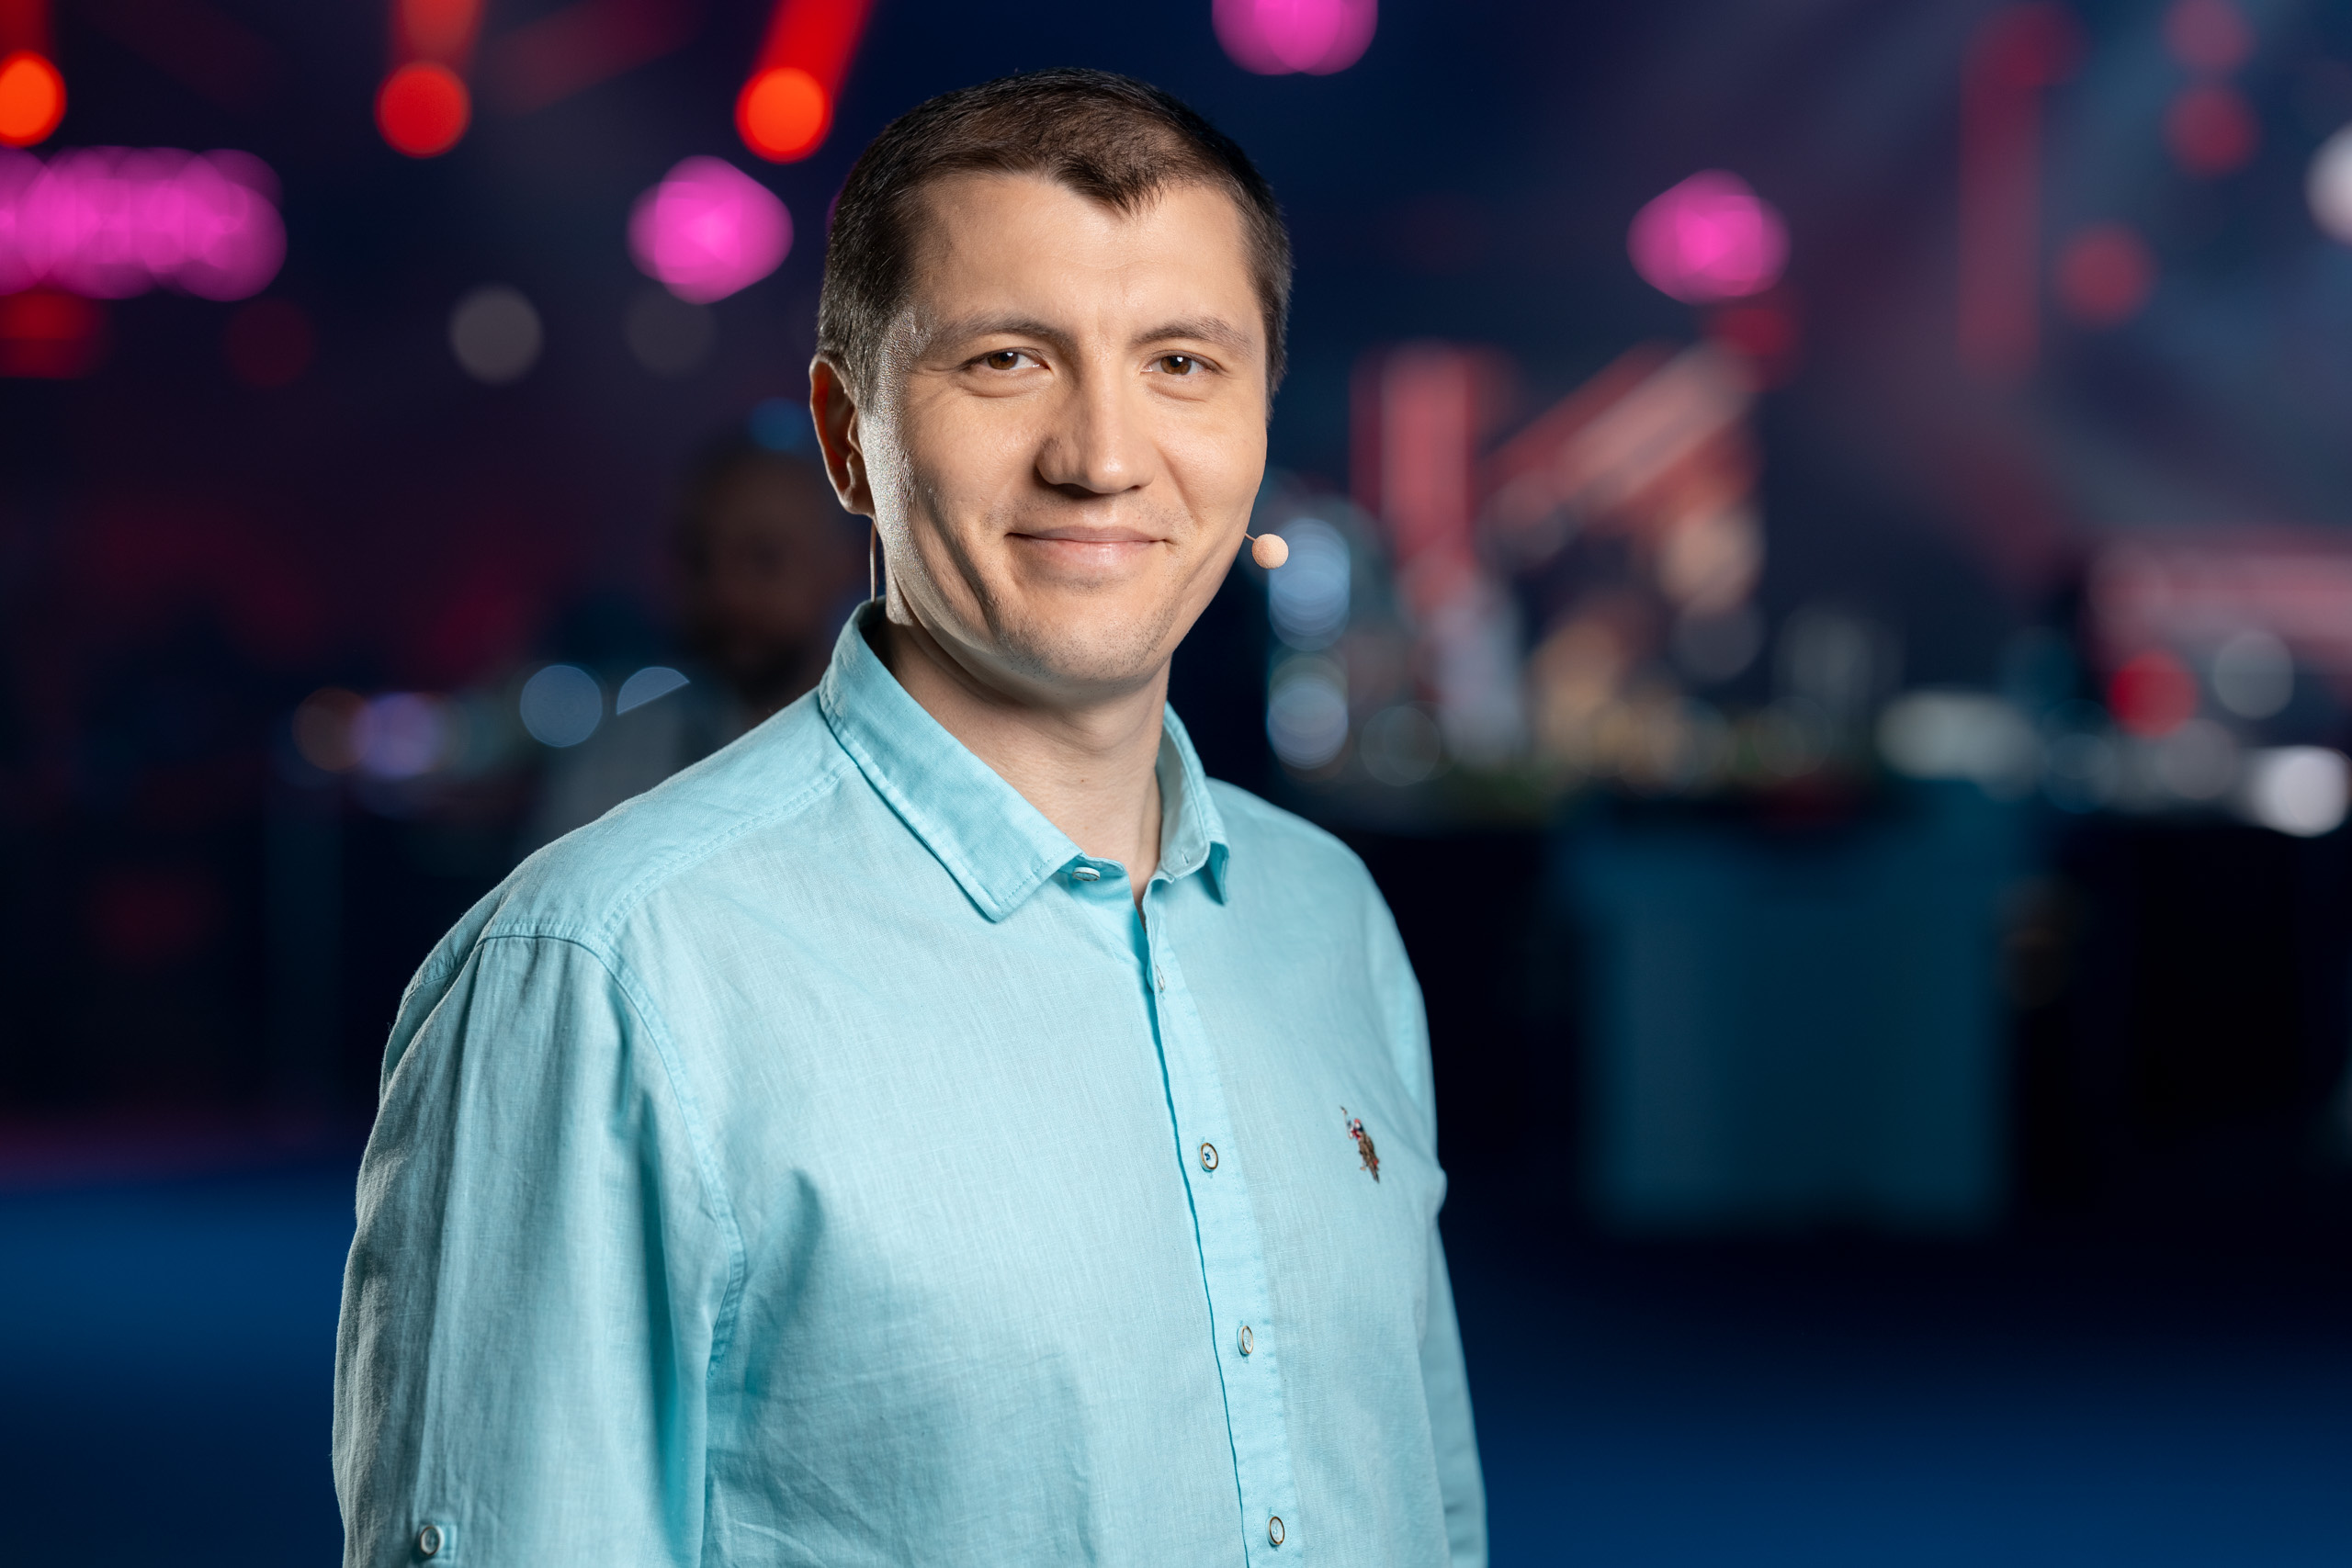 Алексей Андреев работал в IT-компании Acronis и «Яндексе». Сейчас — управляющий директор департамента исследований и разработки Positive Technologies